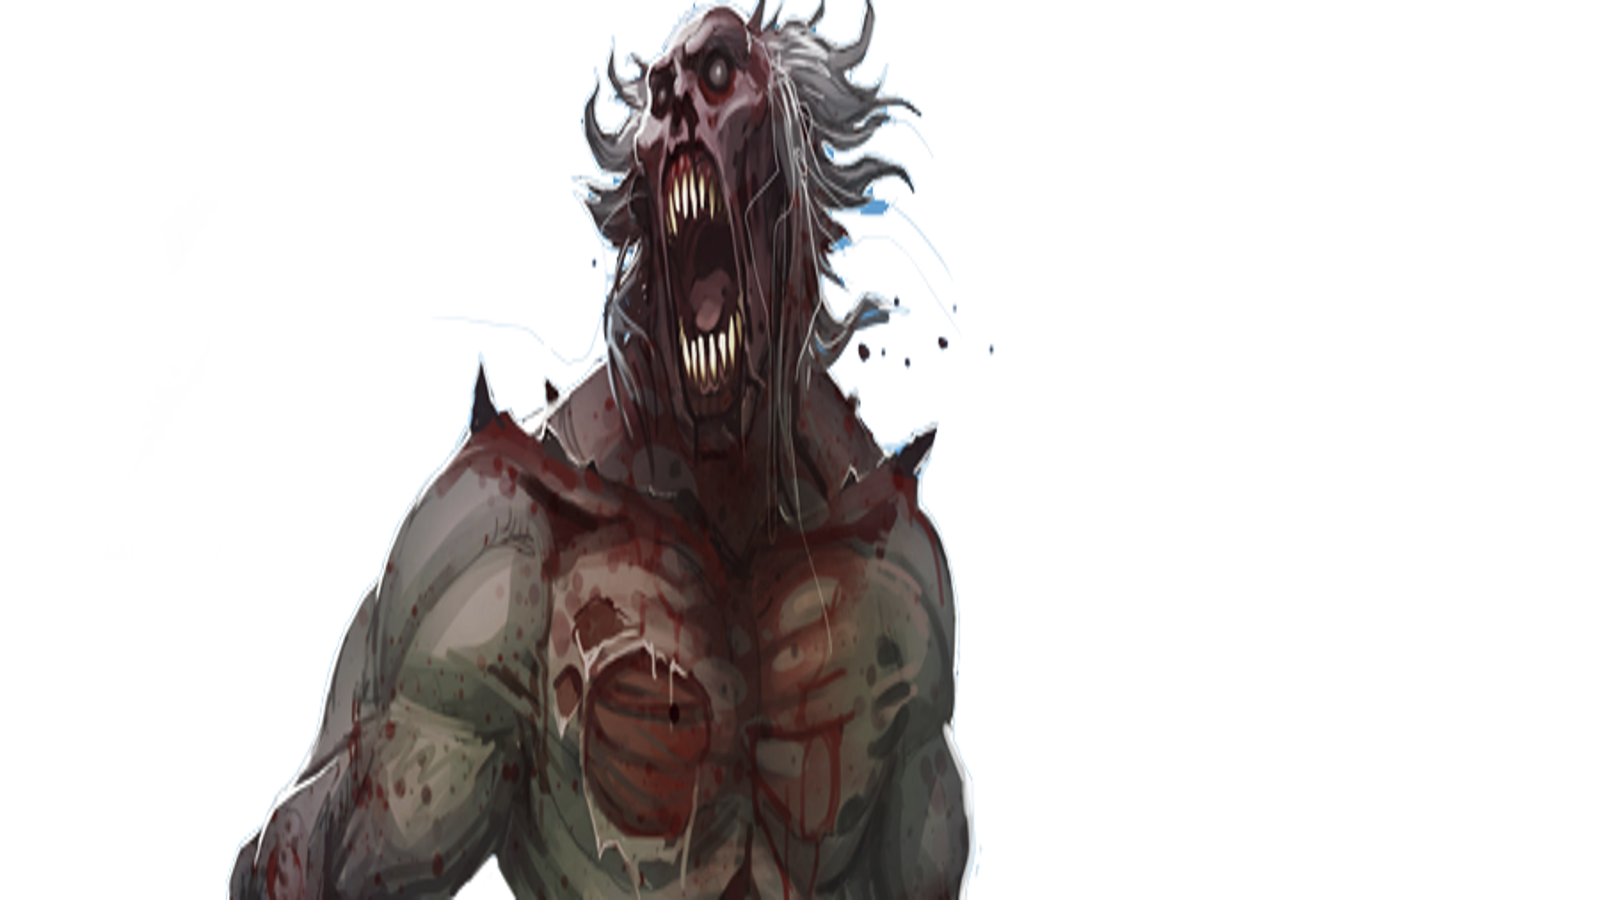 Dead Island - Dead Island 2 tem sua página retirada do Steam - The Enemy